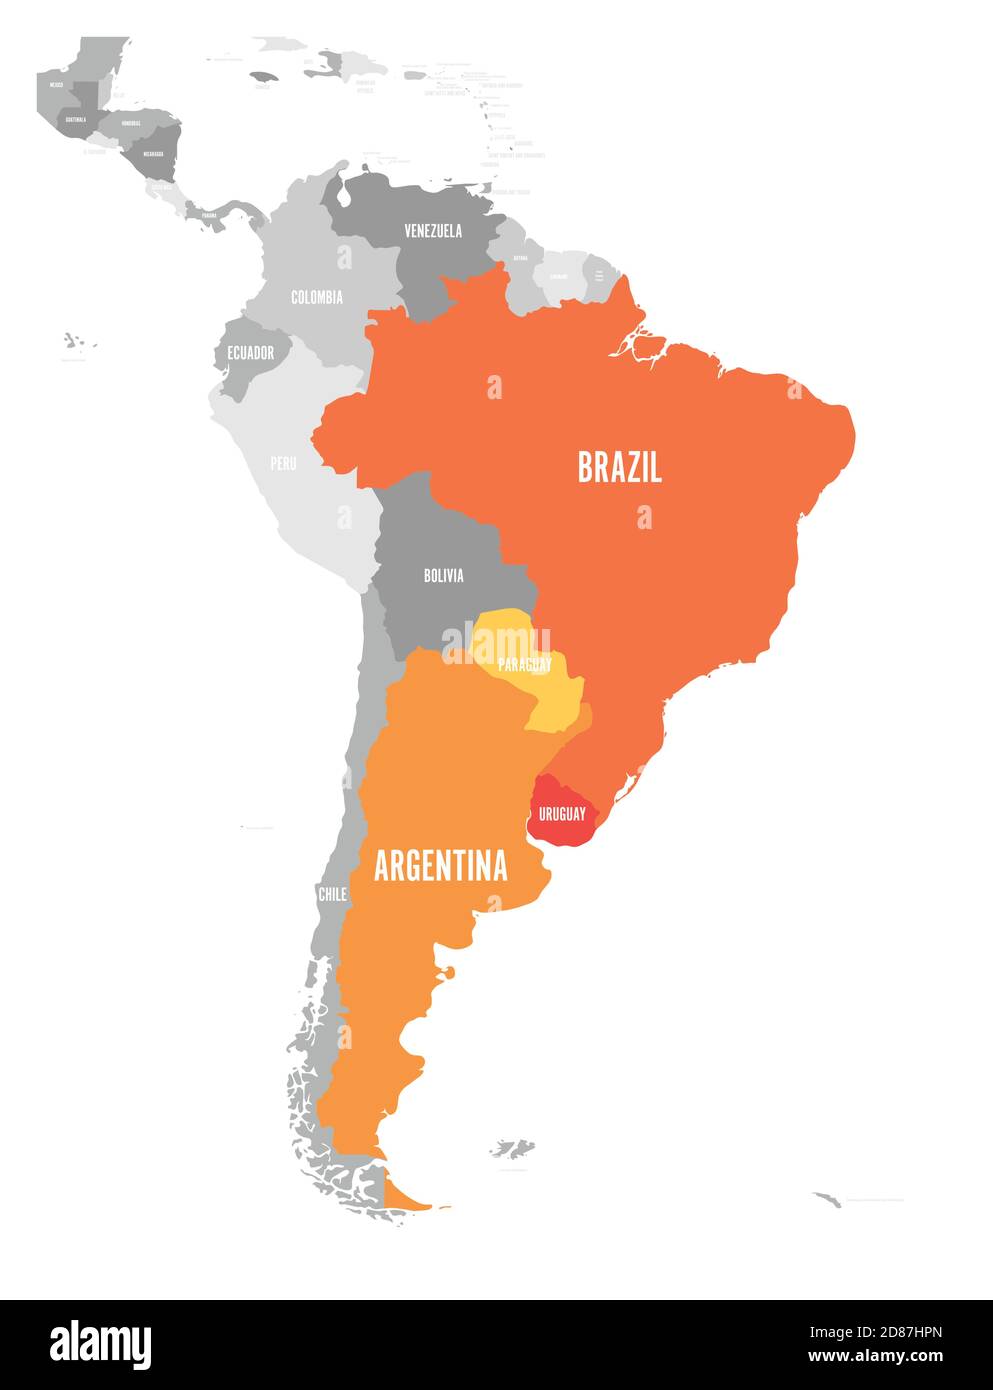 Karte der Regionen DES MERCOSUR. südamerikanischer Handelsverband. Orange hervorgehobene Mitgliedsstaaten Brasilien, Paraguay, Uruguay und Argetina. Seit Dezember 2016. Stock Vektor